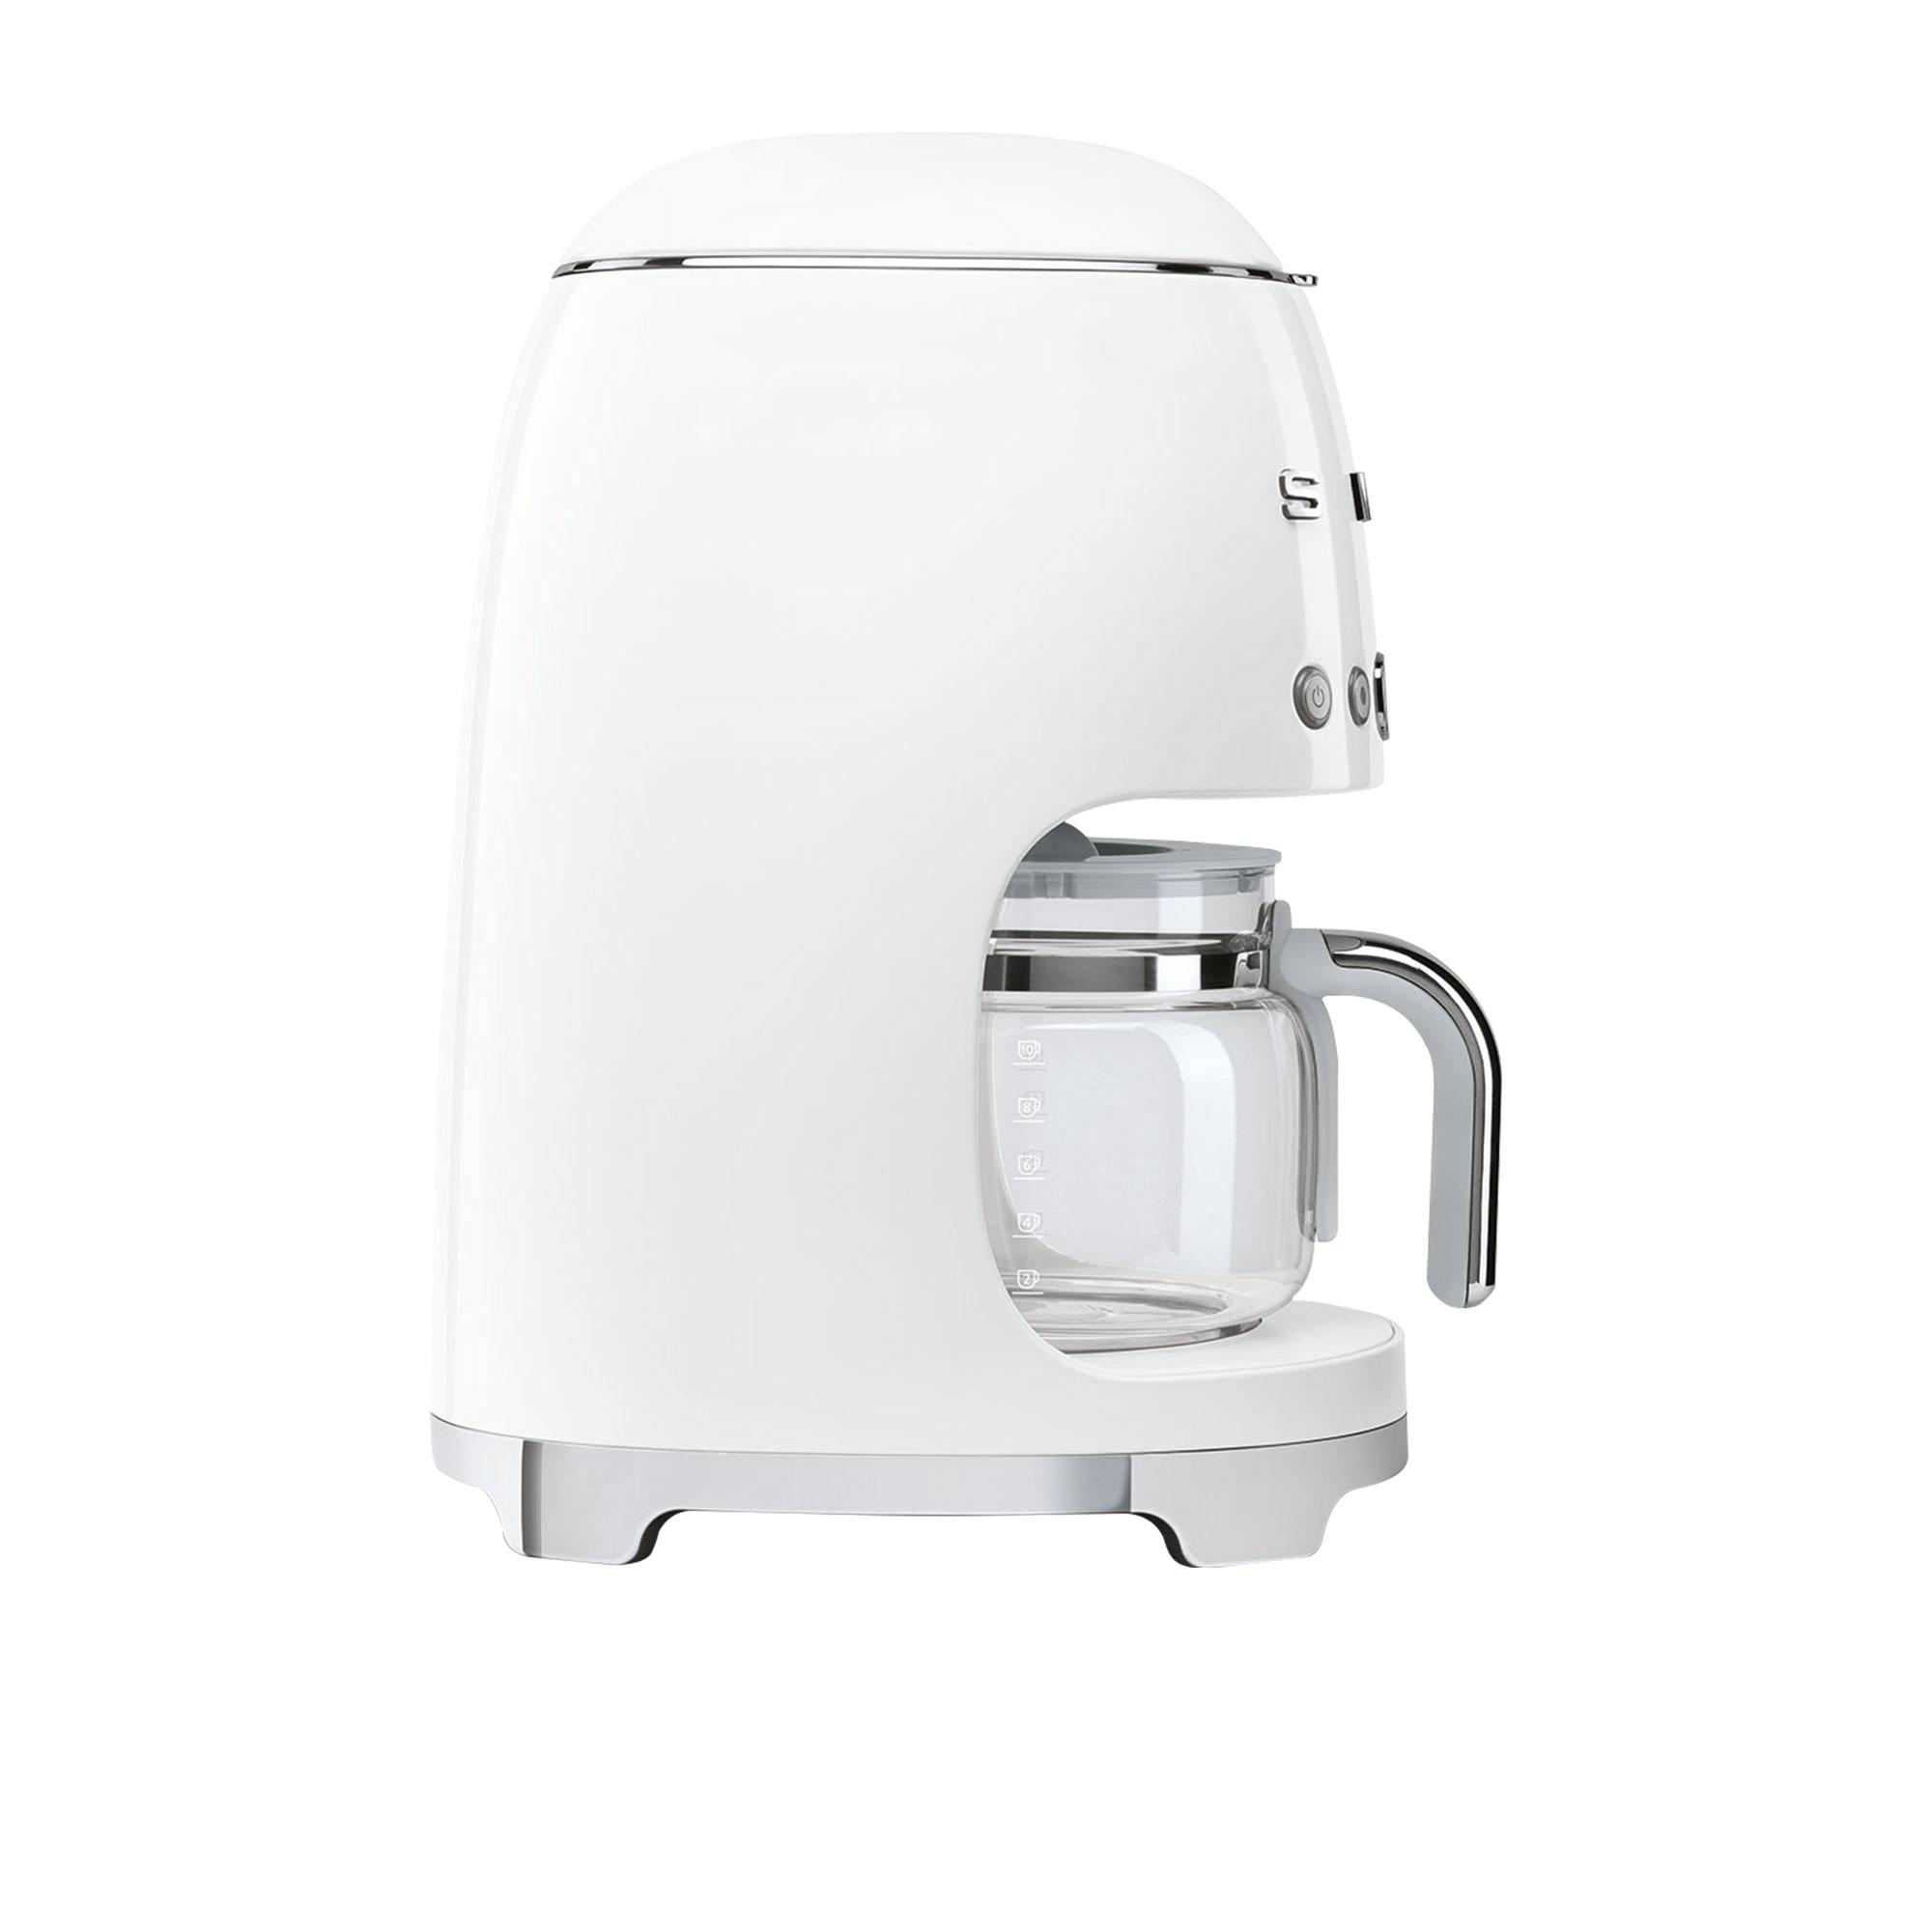 Smeg 50's Retro Style Drip Filter Coffee Machine White Image 4